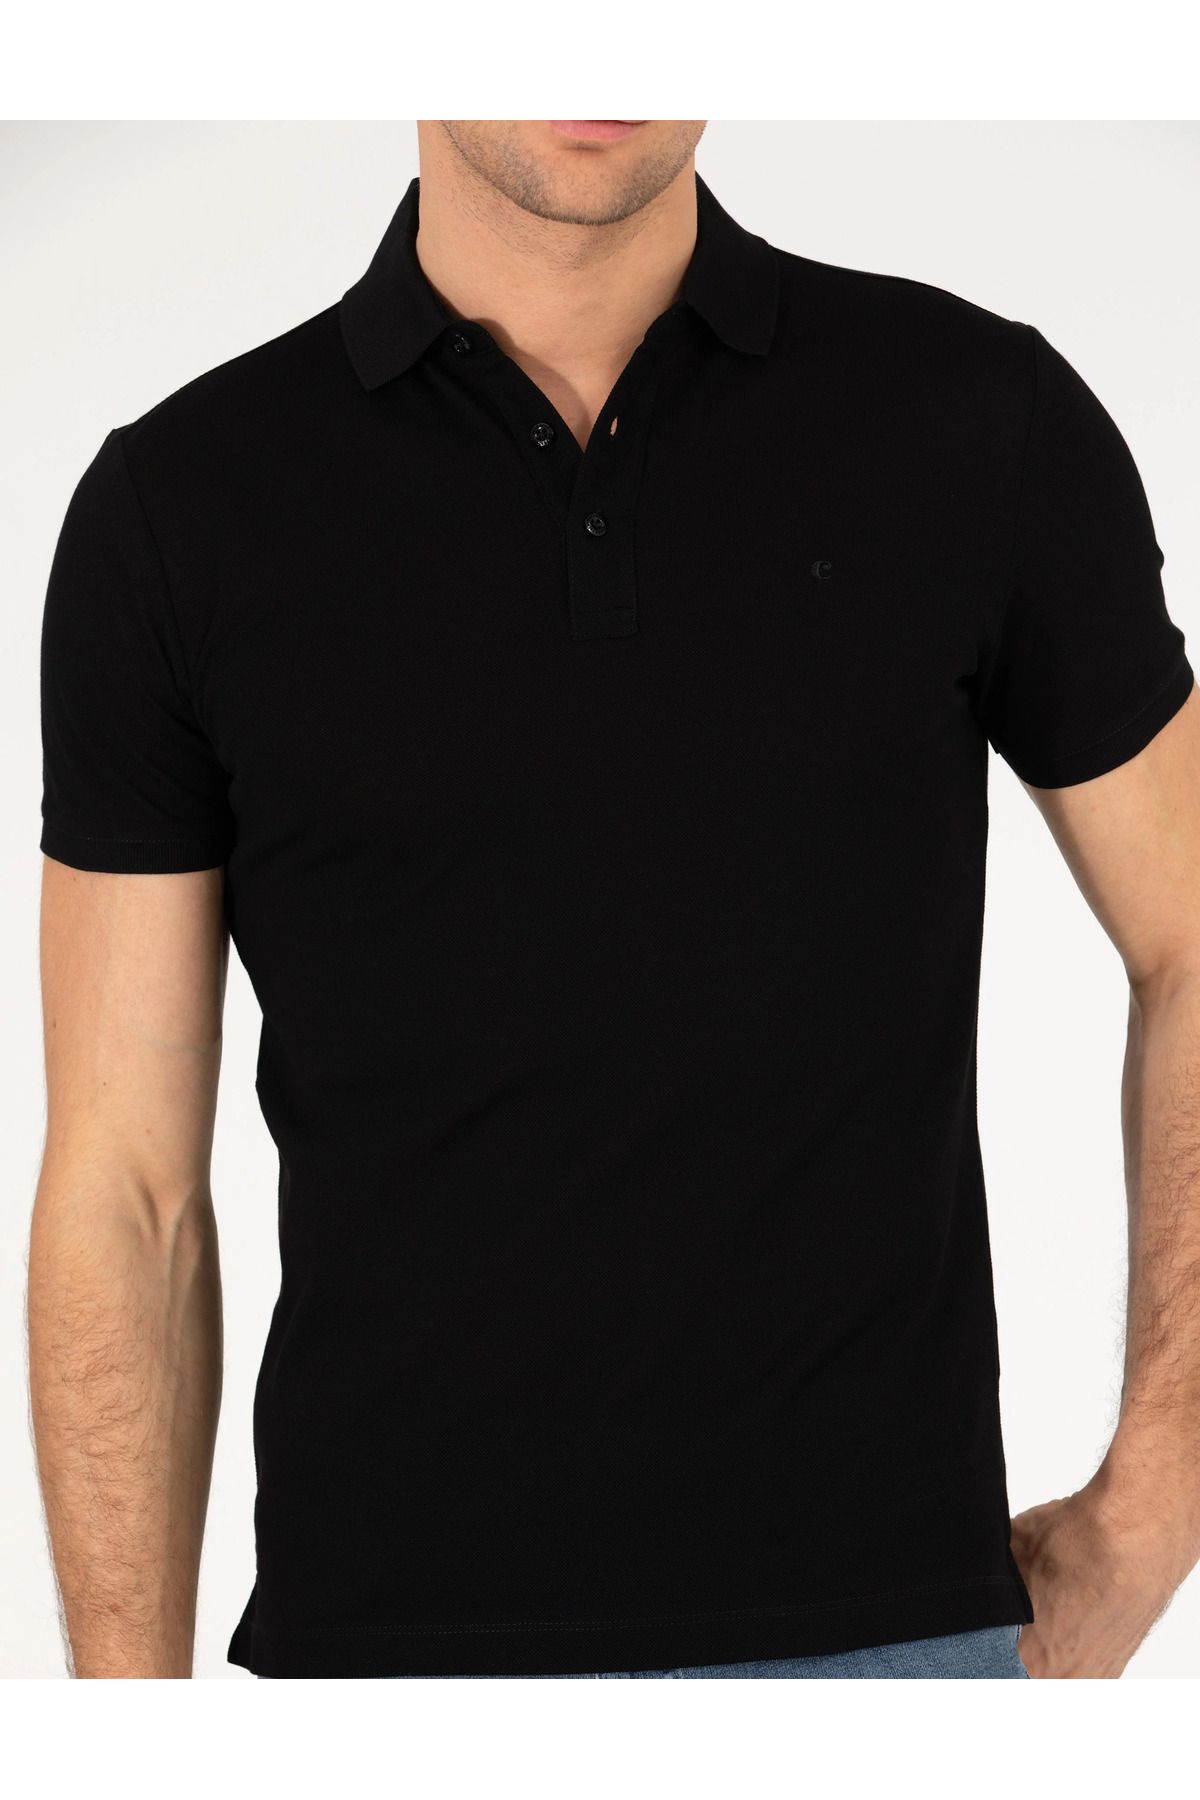 Cacharel Siyah Polo Yaka Slim Fit Basic T-Shirt G051SZ011.000.1592189.VR033